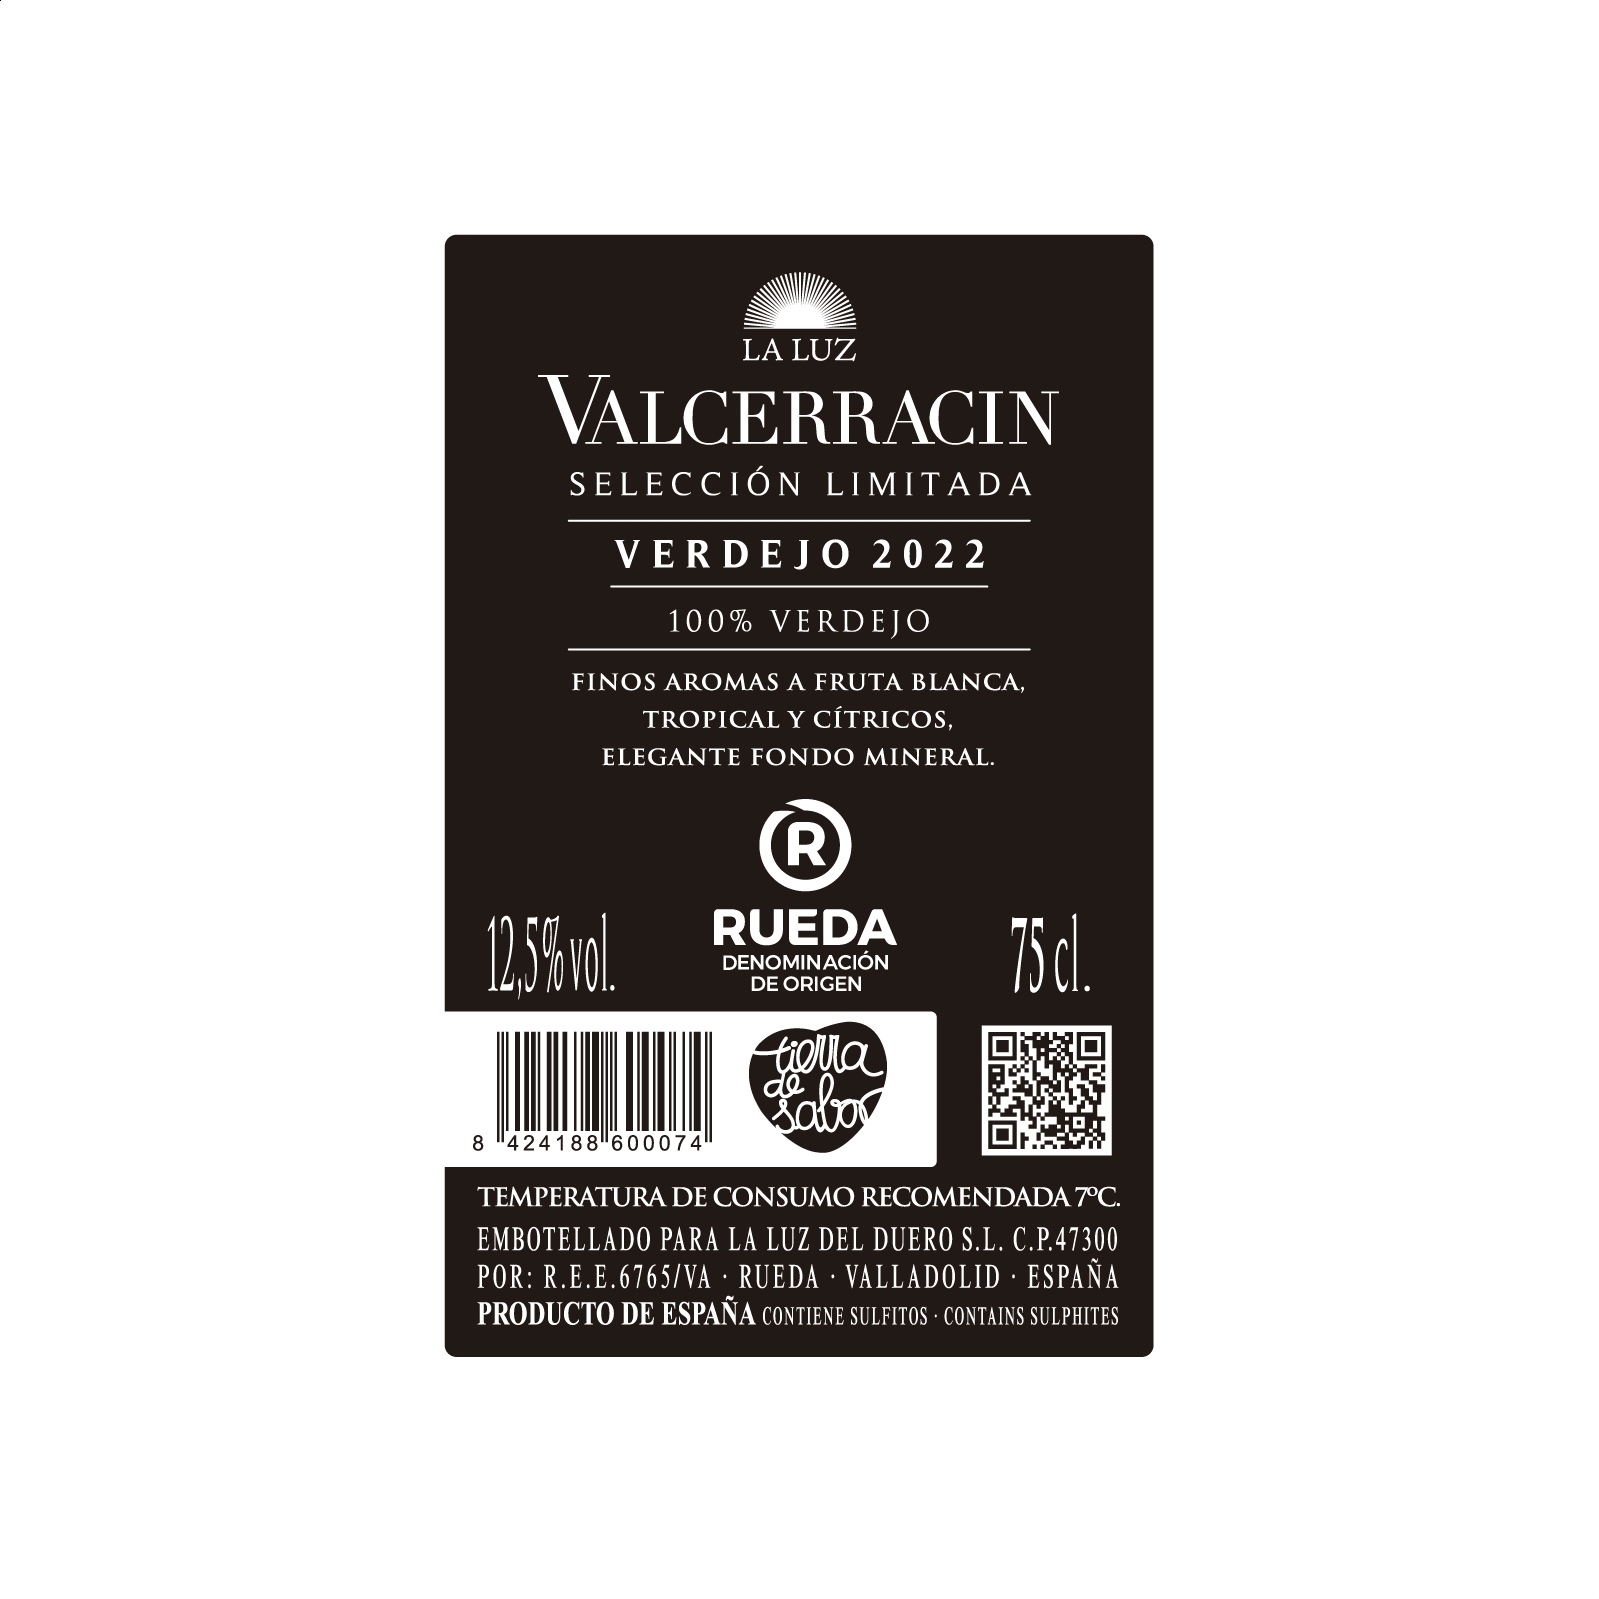 Pagos de Valcerracín - Vino blanco Verdejo Selección limitada 2022 D.O. Rueda 75cl, 6uds